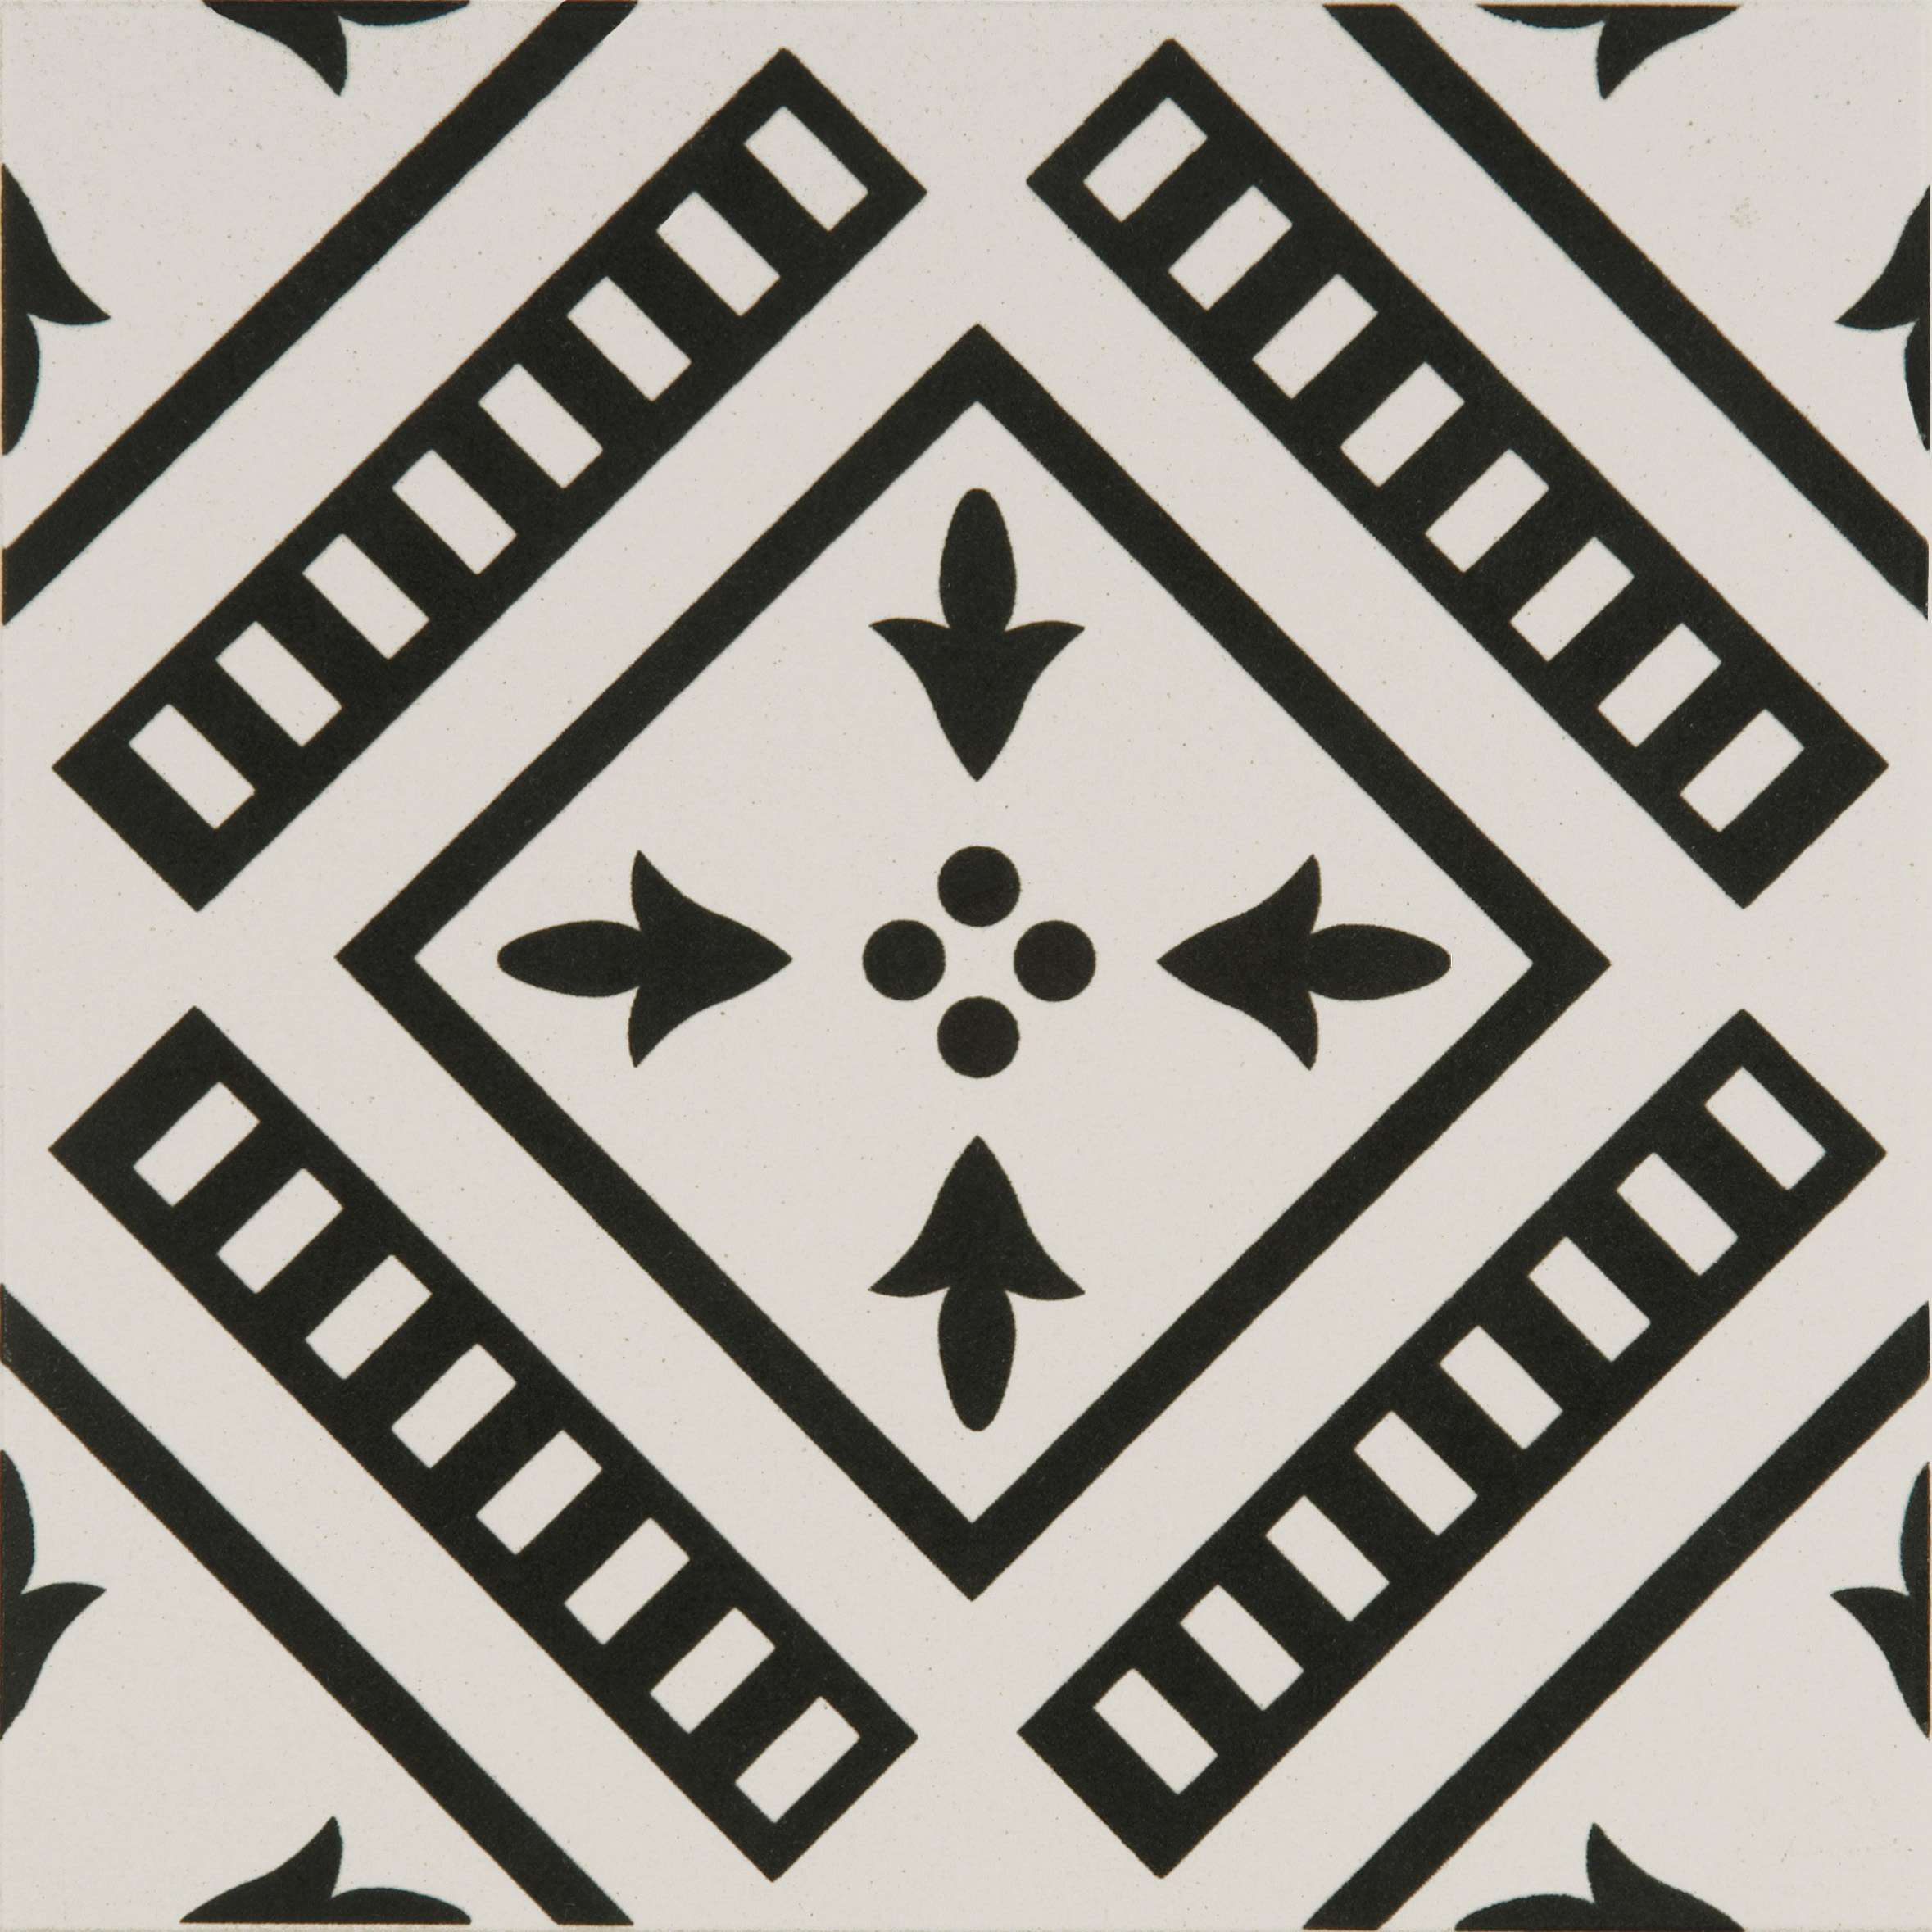 Original Style Odyssey Primo Pompeii Black on Dover White Tile 15x15cm